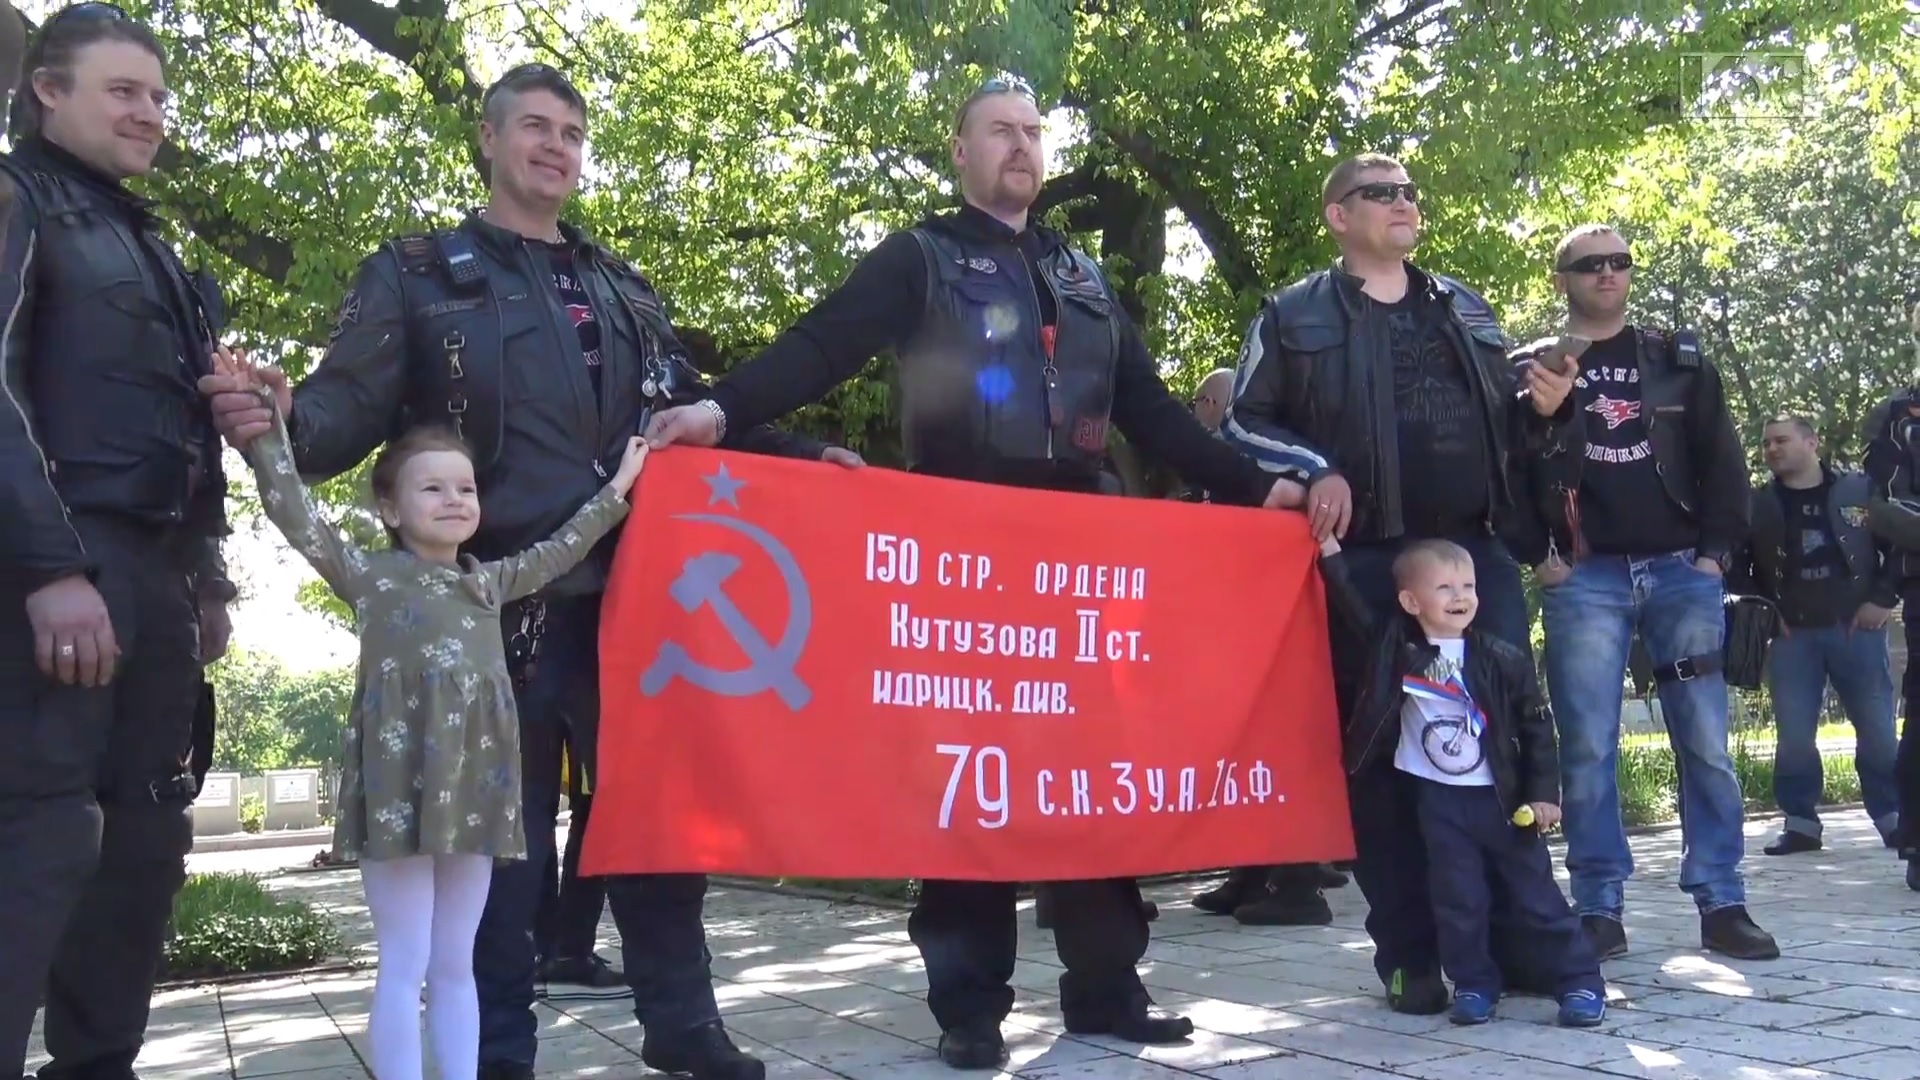 A rendőrség szerint nem volt bűncselekmény, hogy az orosz motorosbanda vörös csillagos, sarló-kalapácsos zászlókkal parádézott egy budapesti temetőben